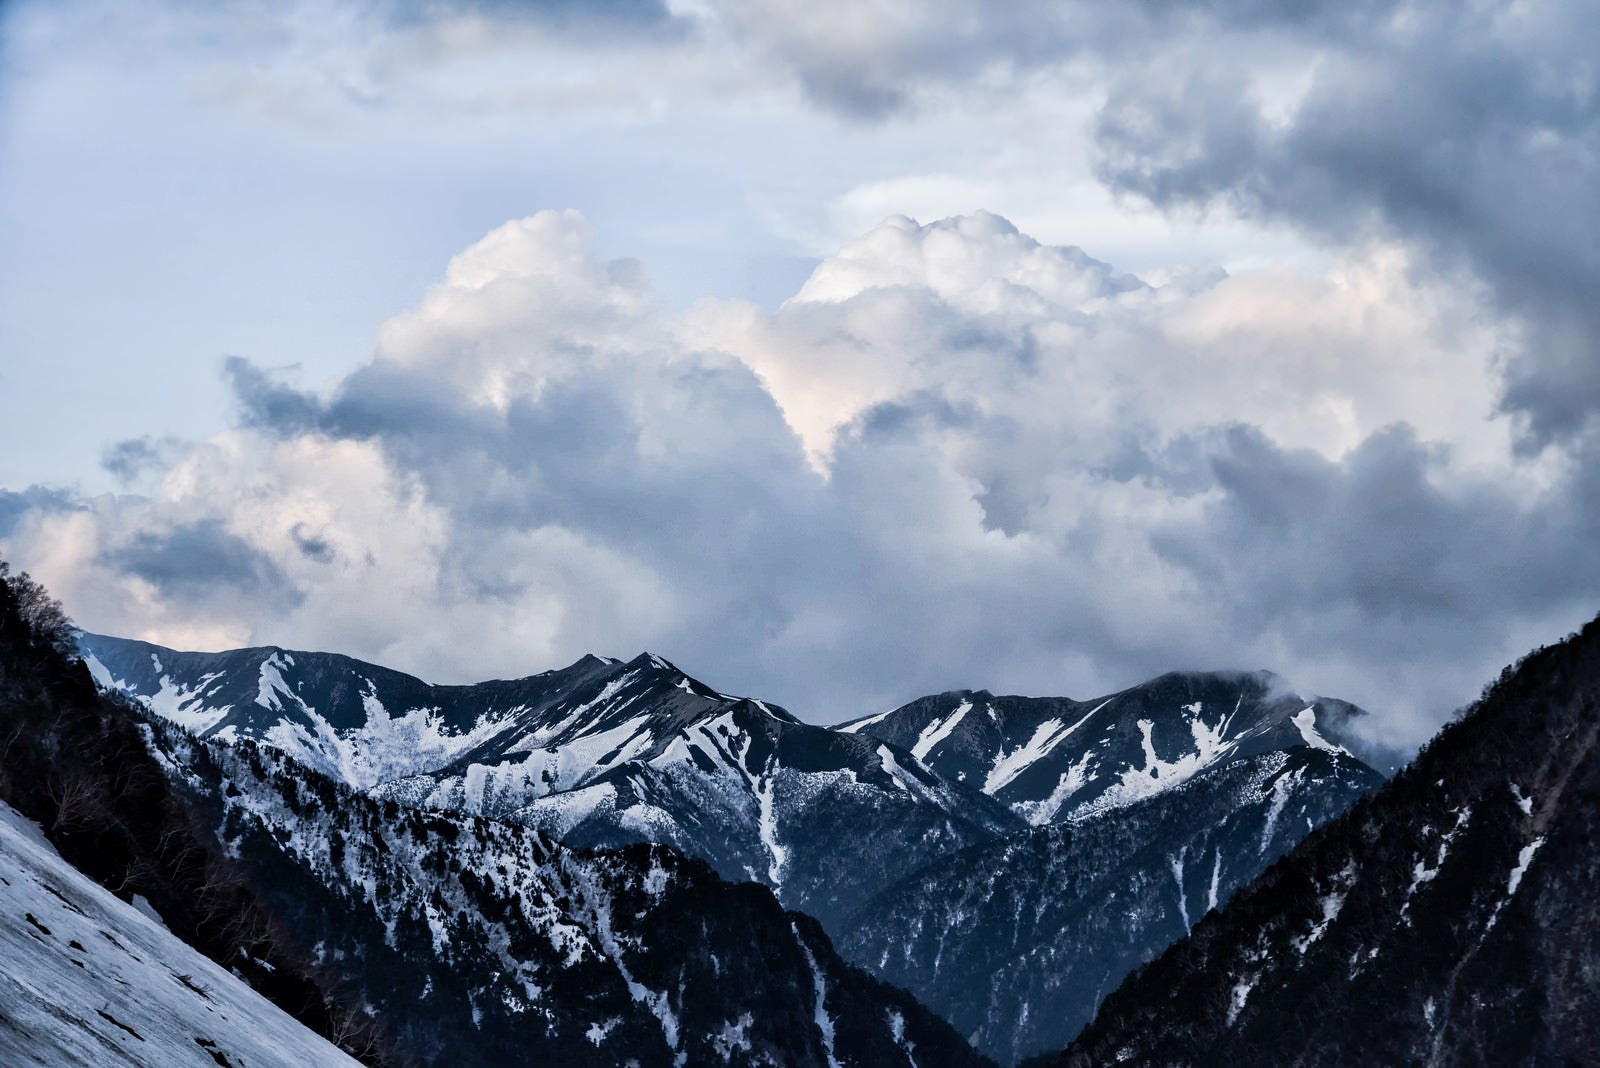 「残雪の雪山にかかる雲」の写真